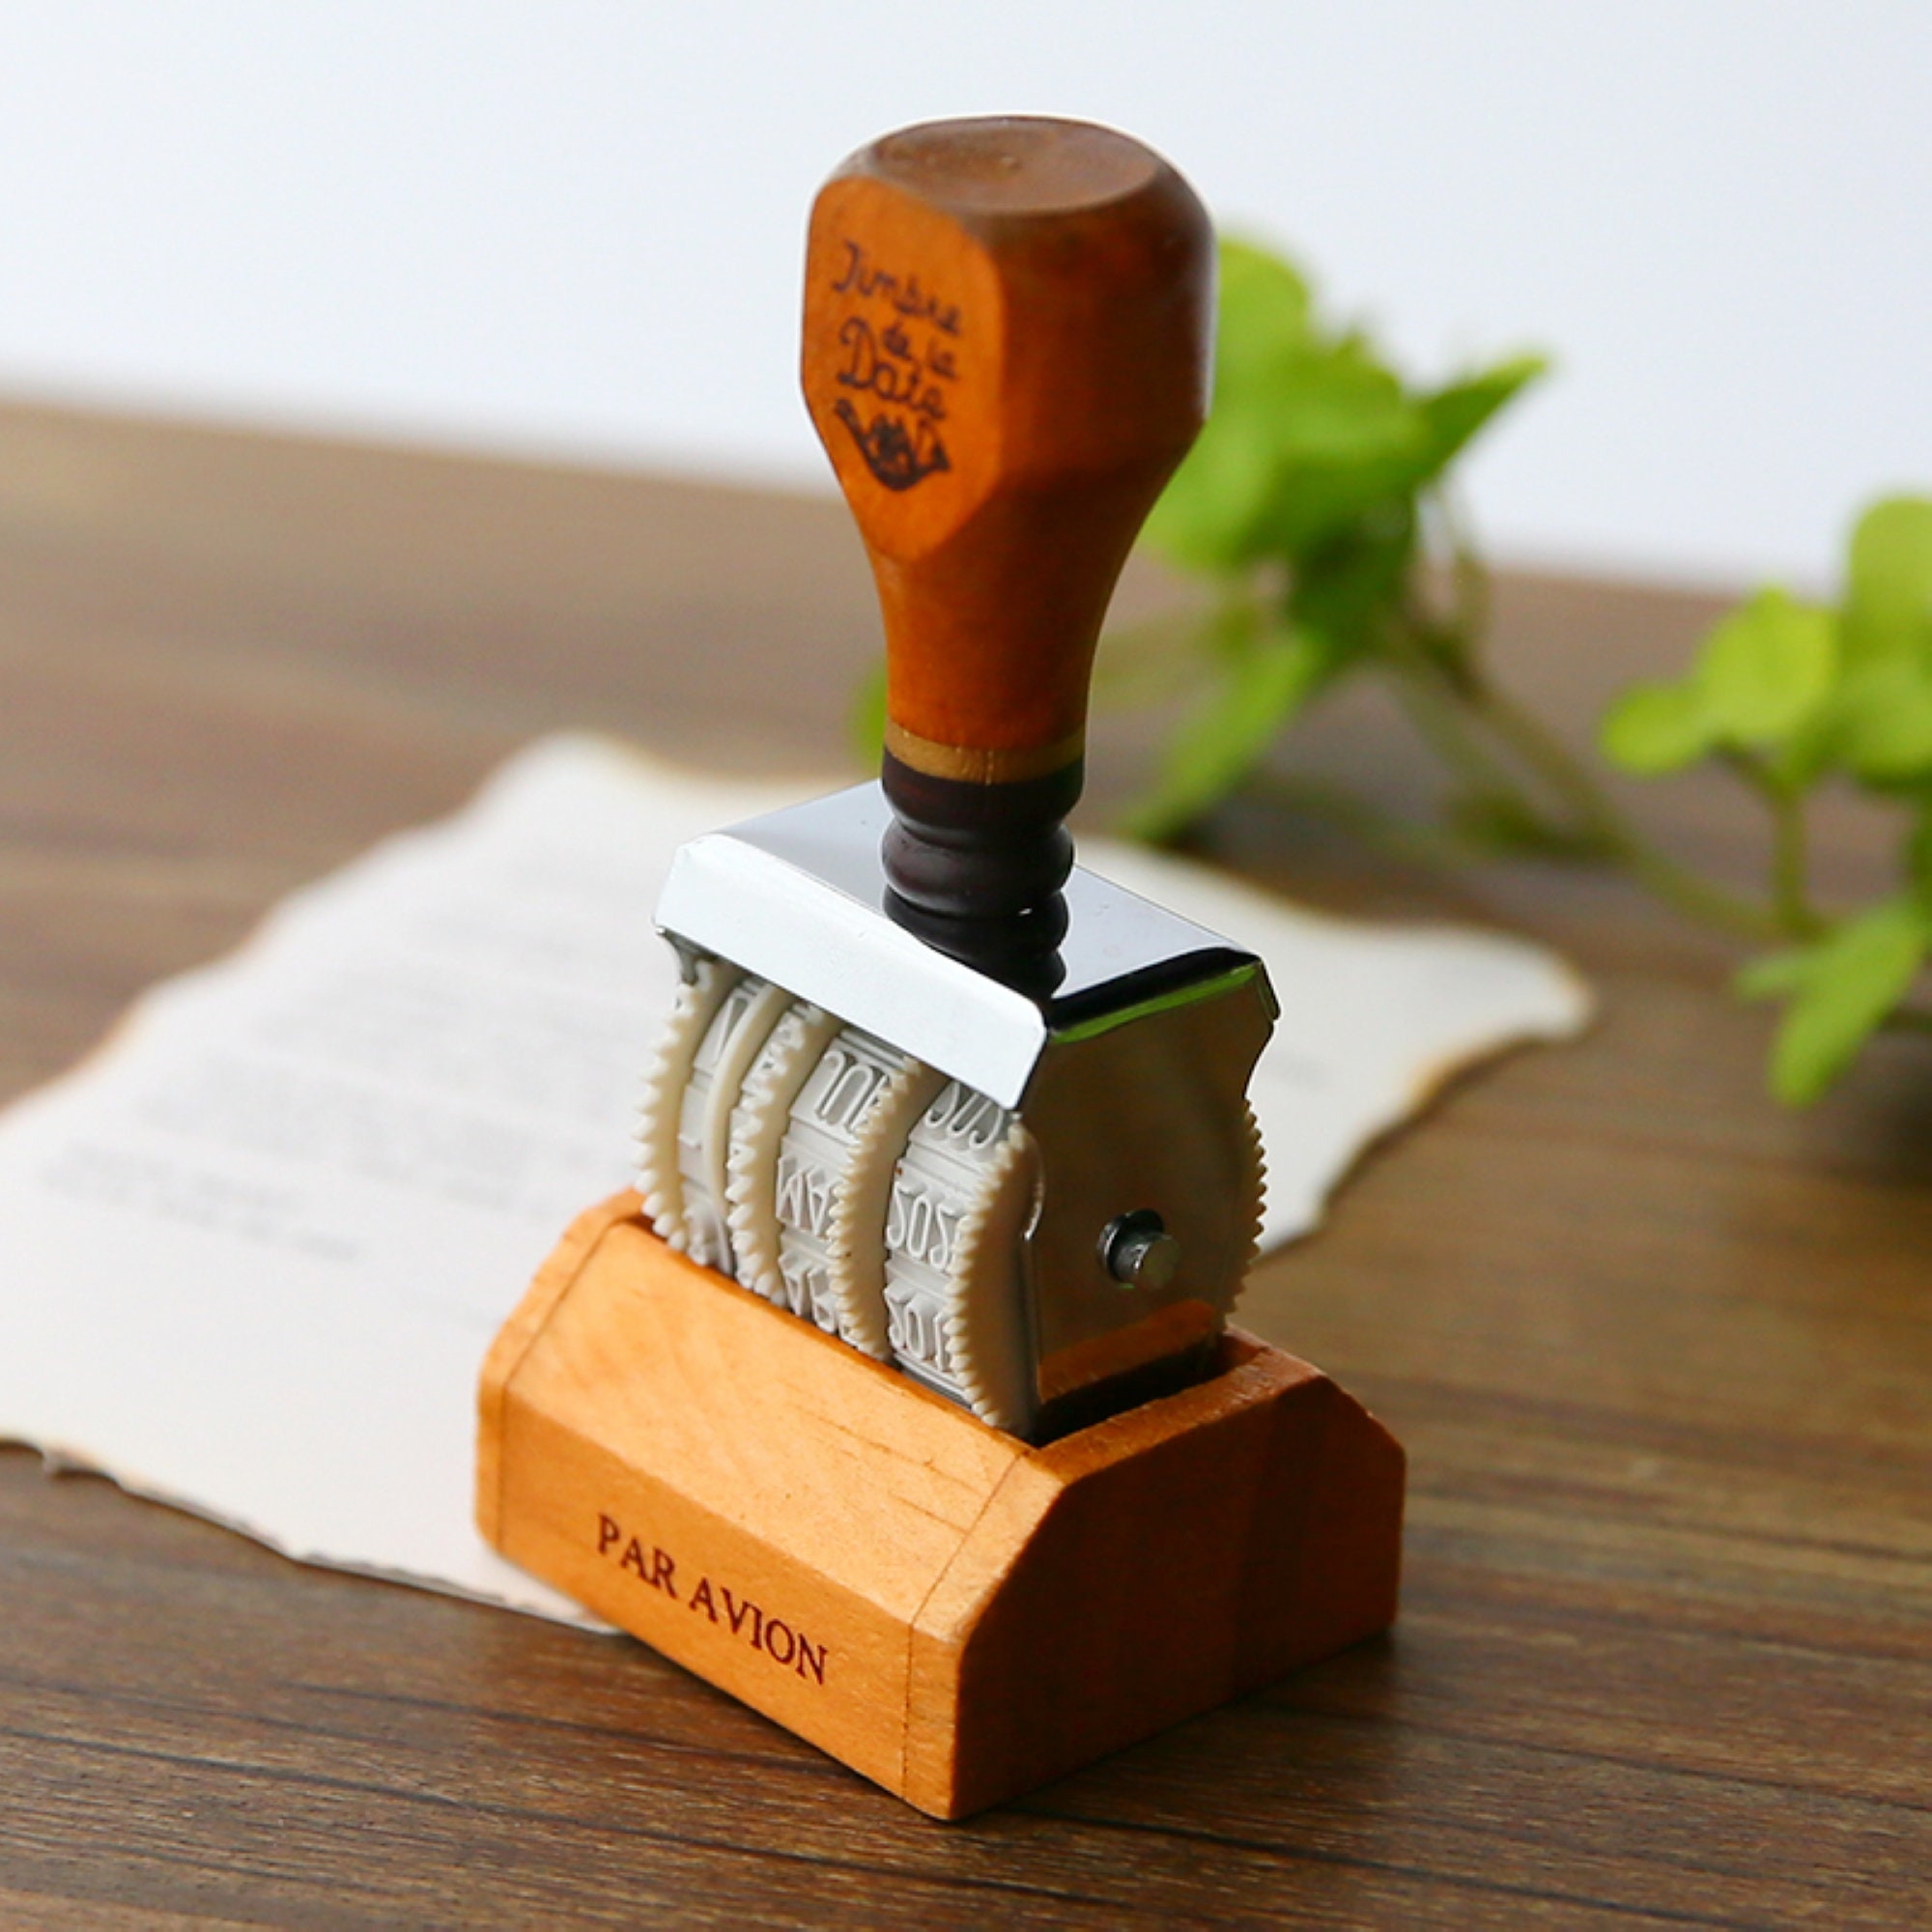 Log Wood + Chalkboard Rubber Stamp. Pick 1 rubber stamp de…